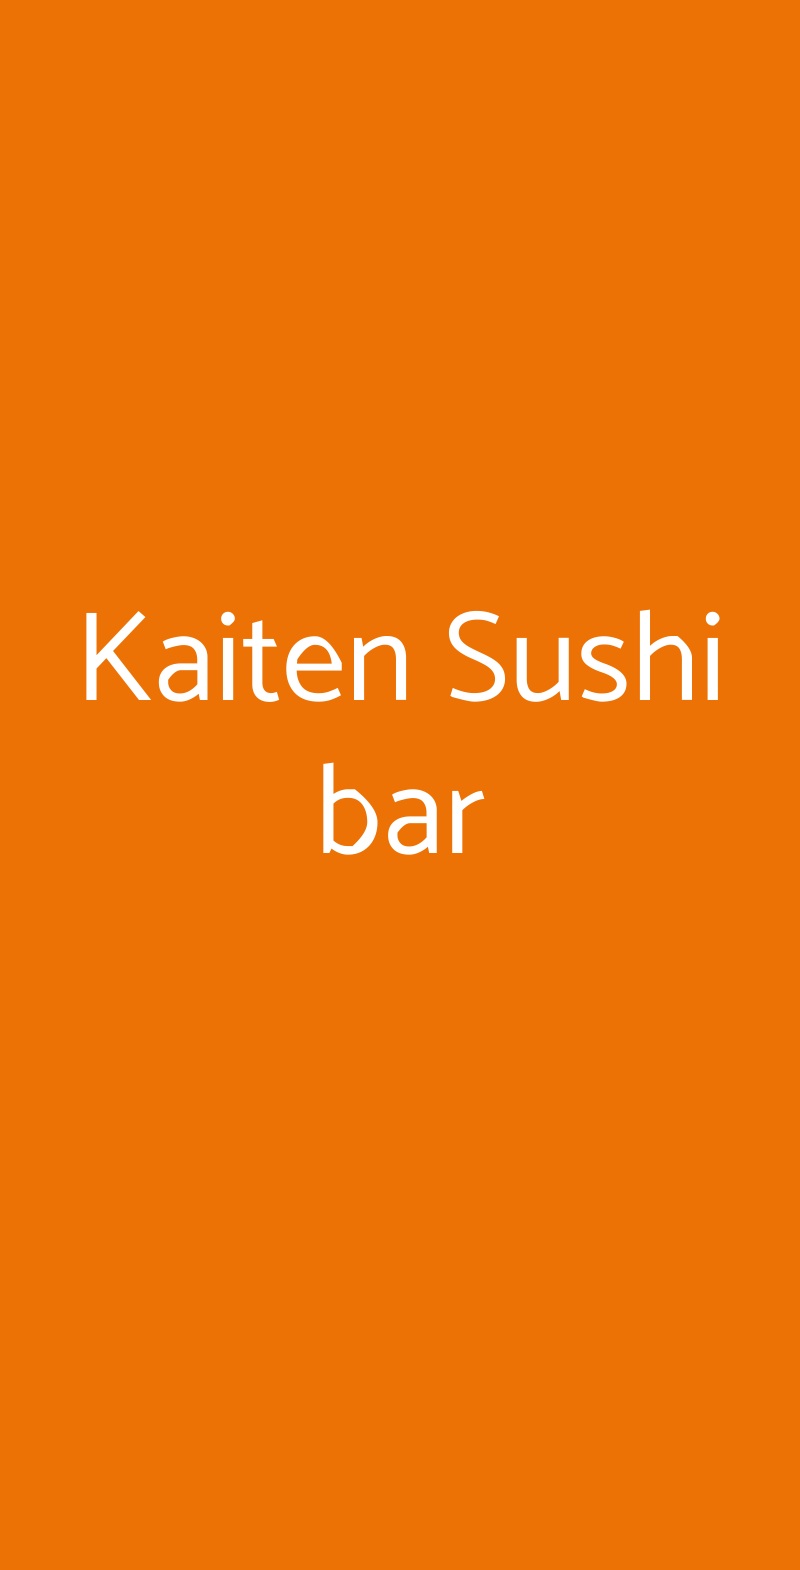 Kaiten Sushi bar Cerro Maggiore menù 1 pagina